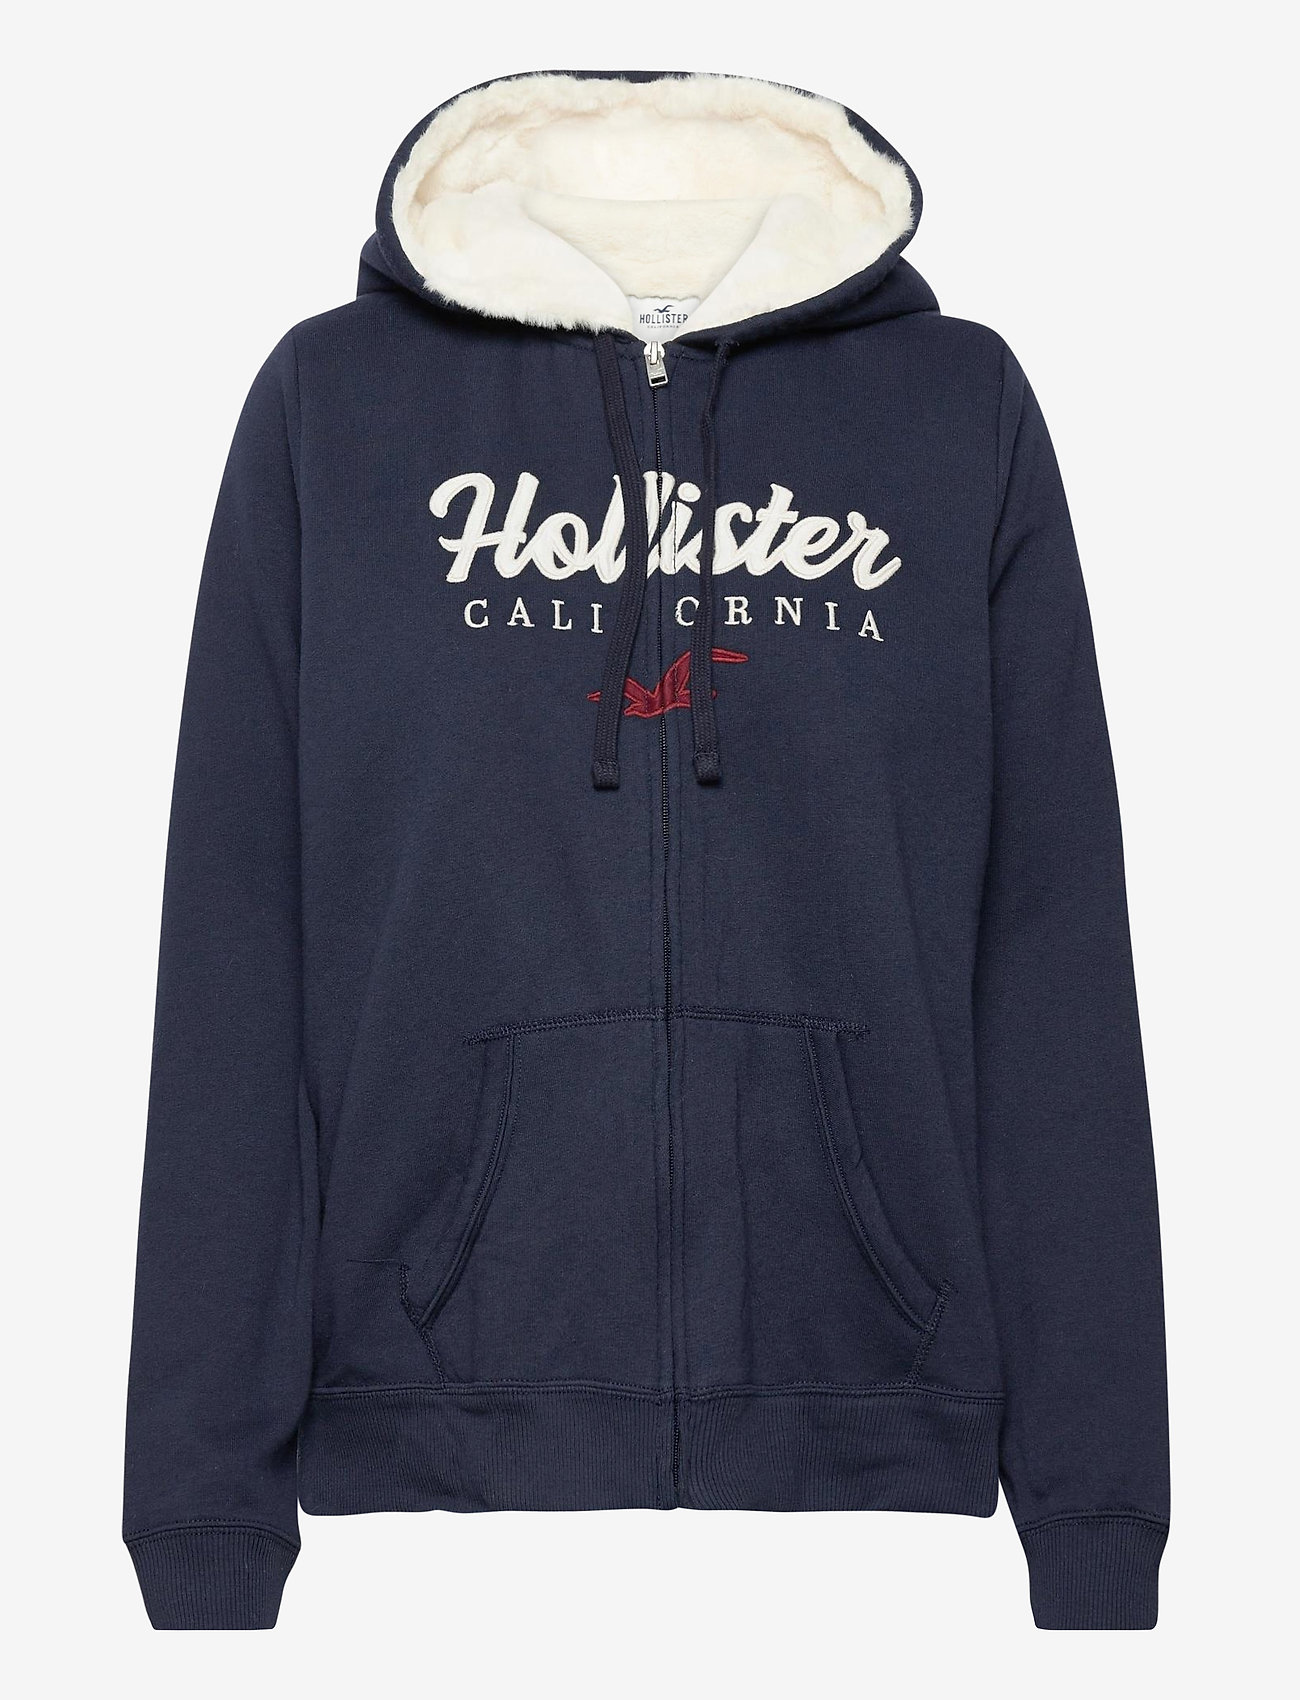 hollister sherpa hoodie